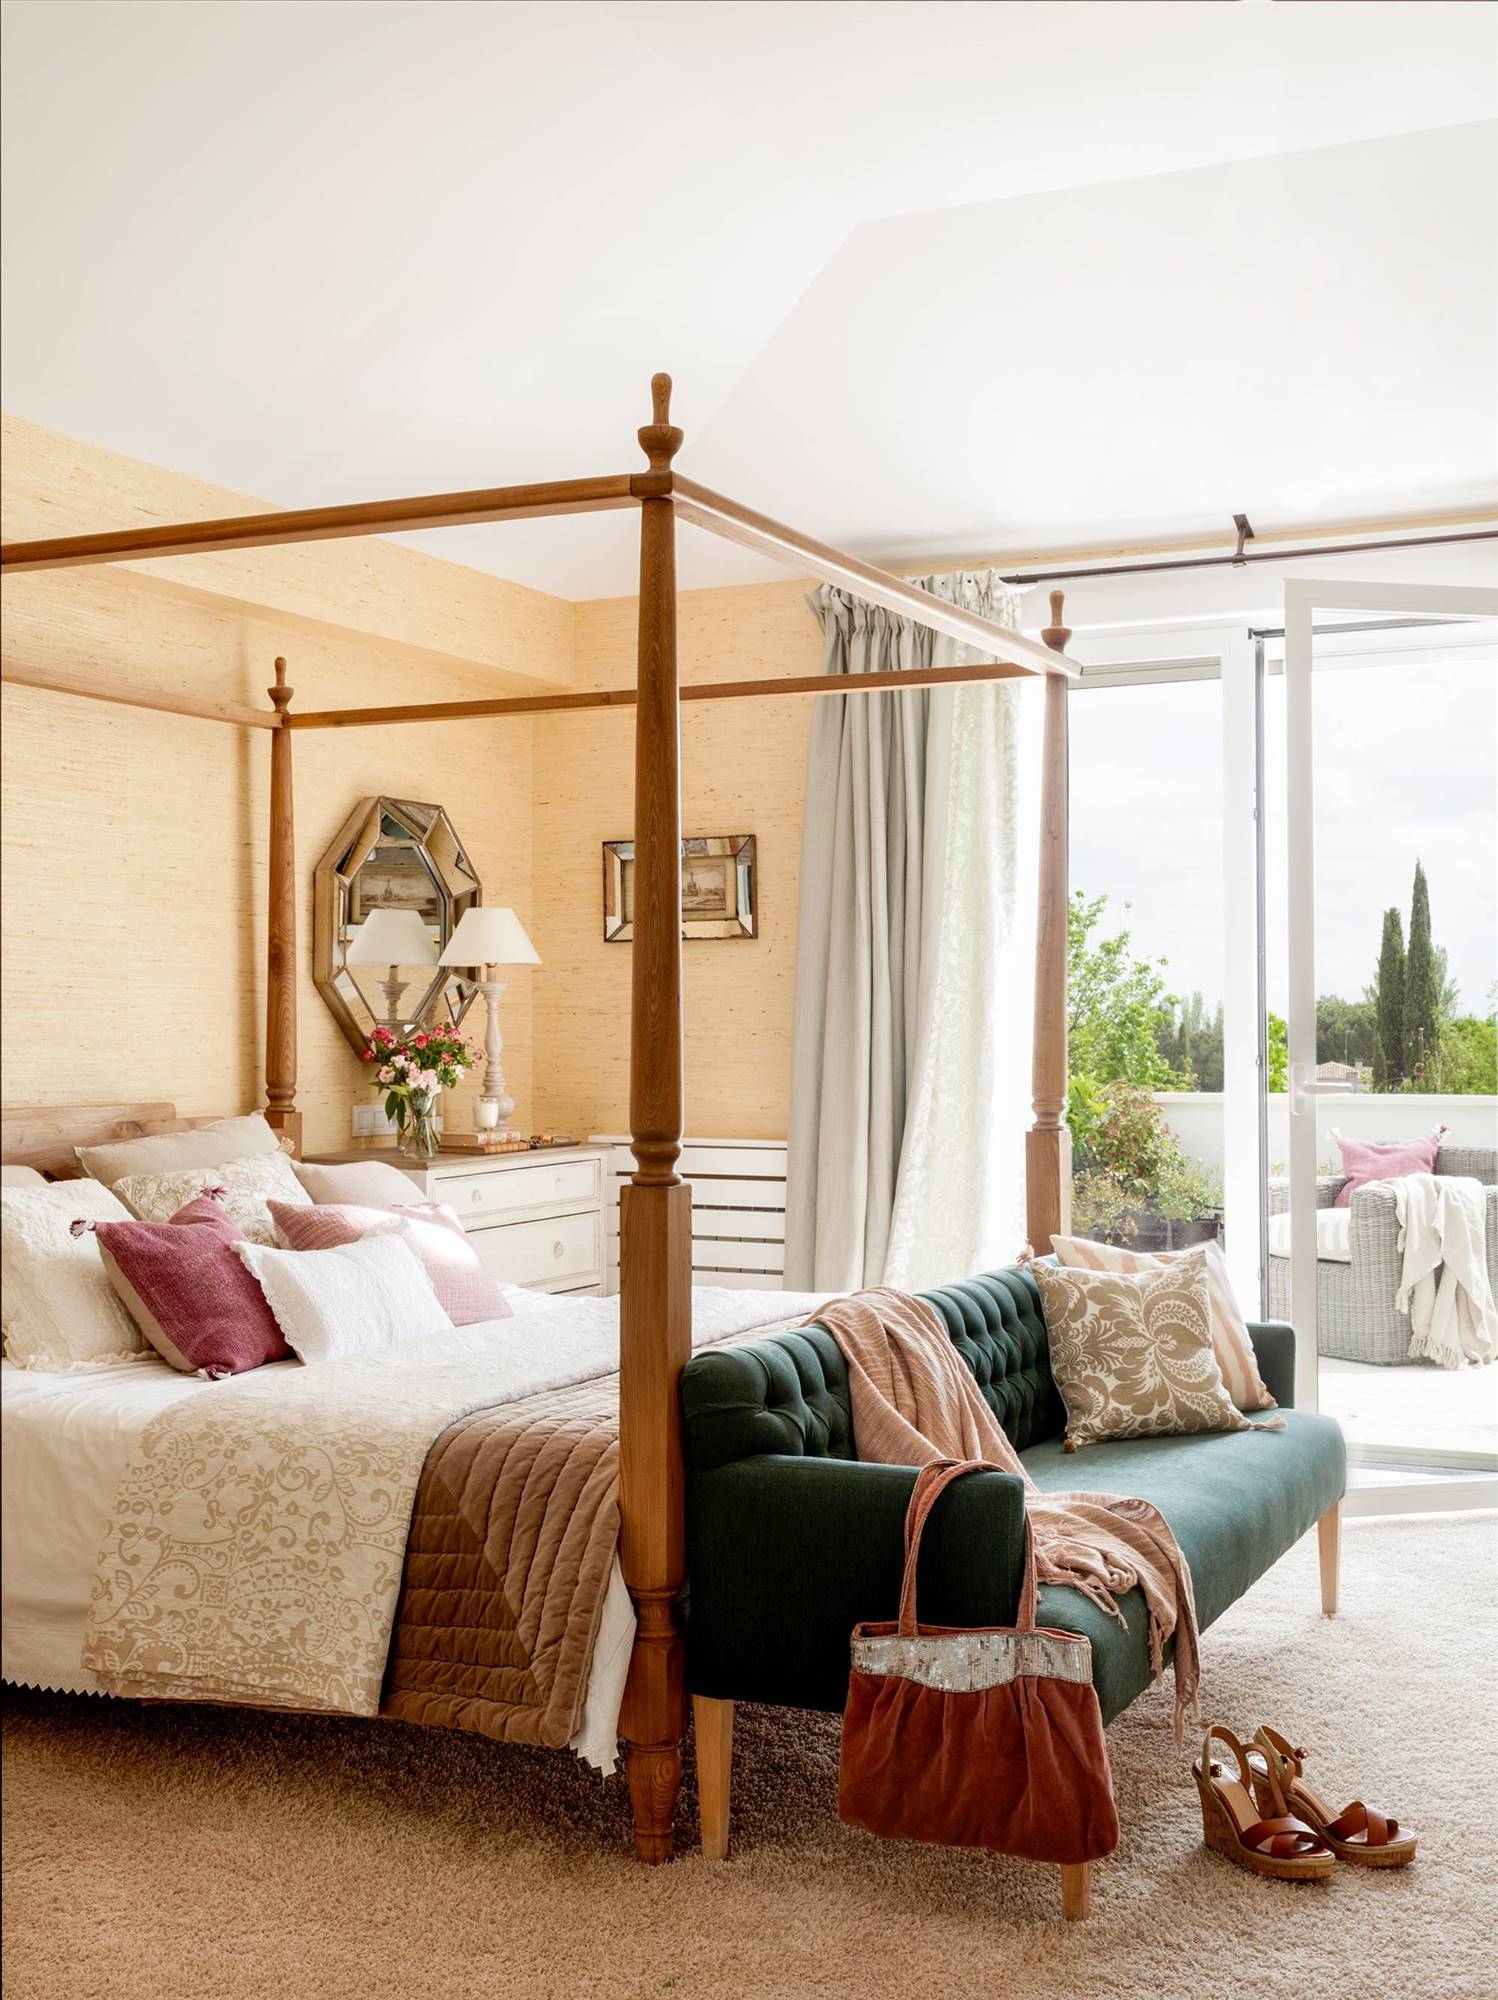 Dormitorio de estilo clásico con dosel de madera y sofá con tapizado capitoné verde a los pies. 